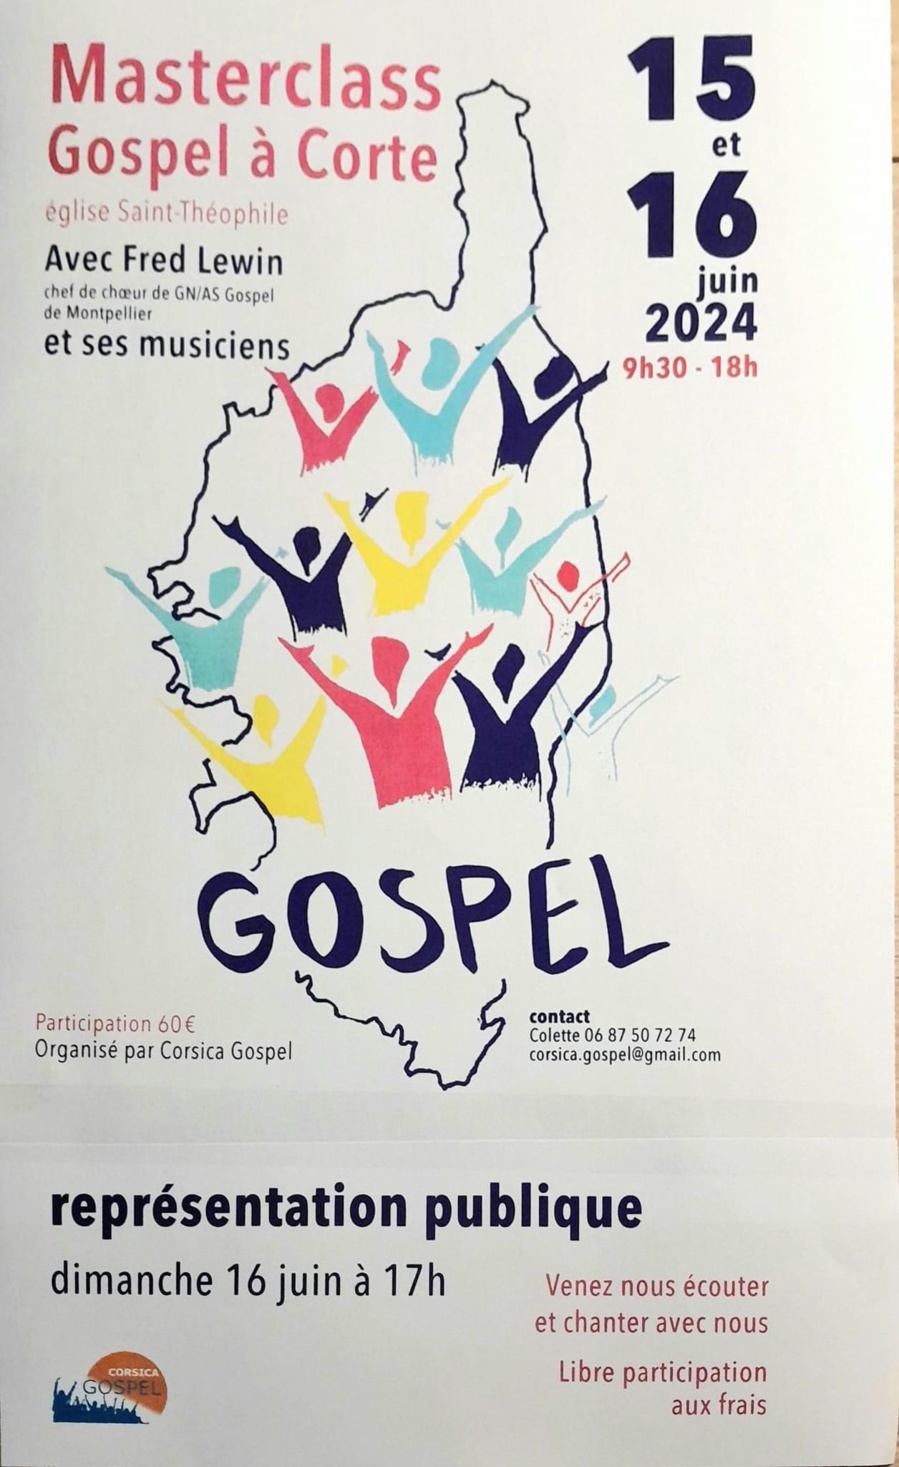 Masterclass Gospel proposé par Corsica Gospel - Eglise Saint-Théophile - Corti